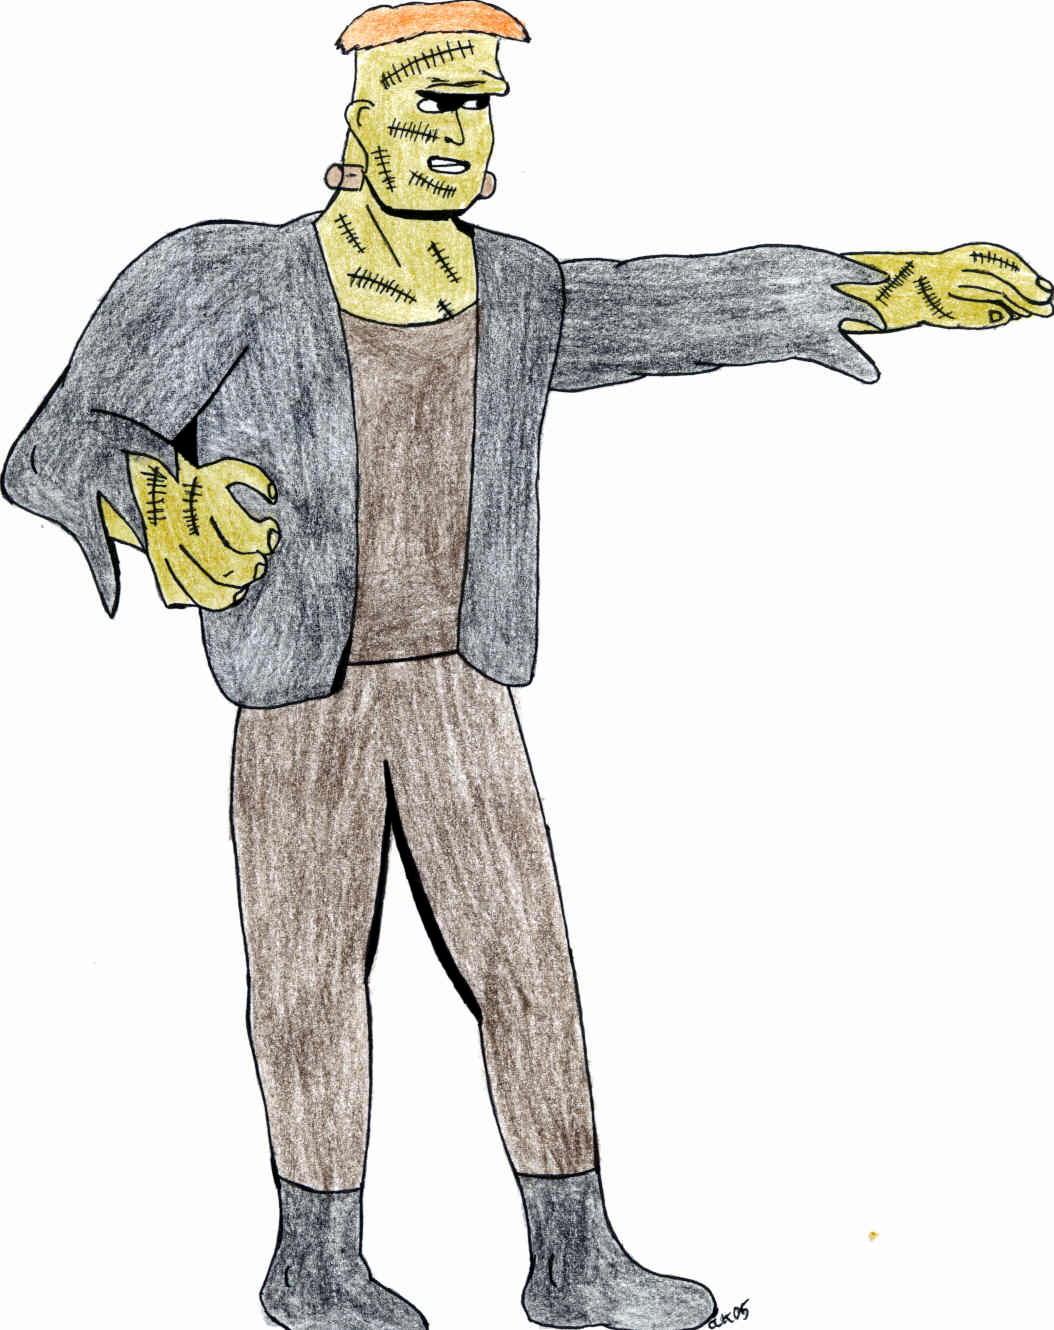 Frankenstein by calklais